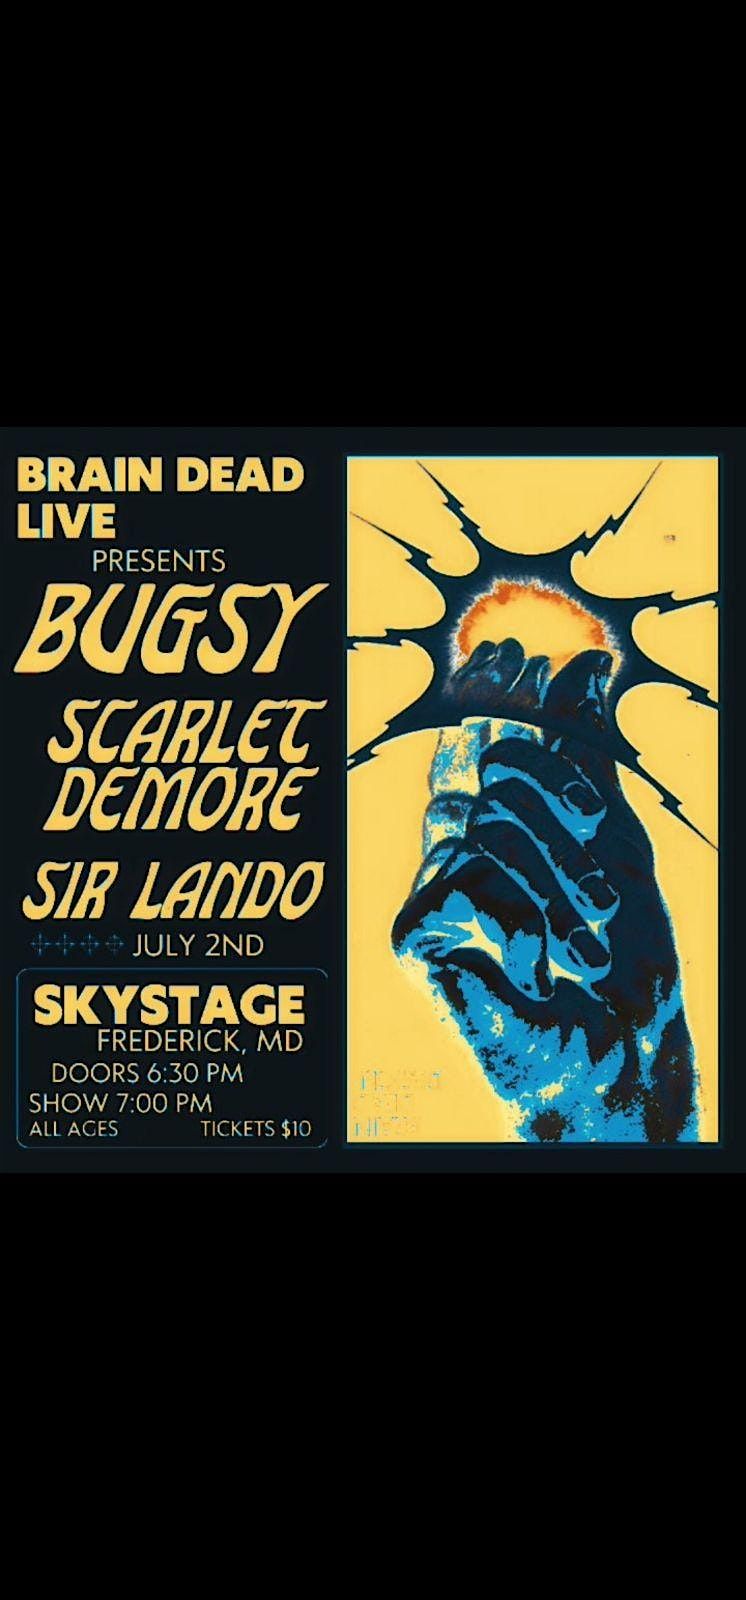 Brain Dead Live: Bugsy, Scarlet Demore & Sir Lando